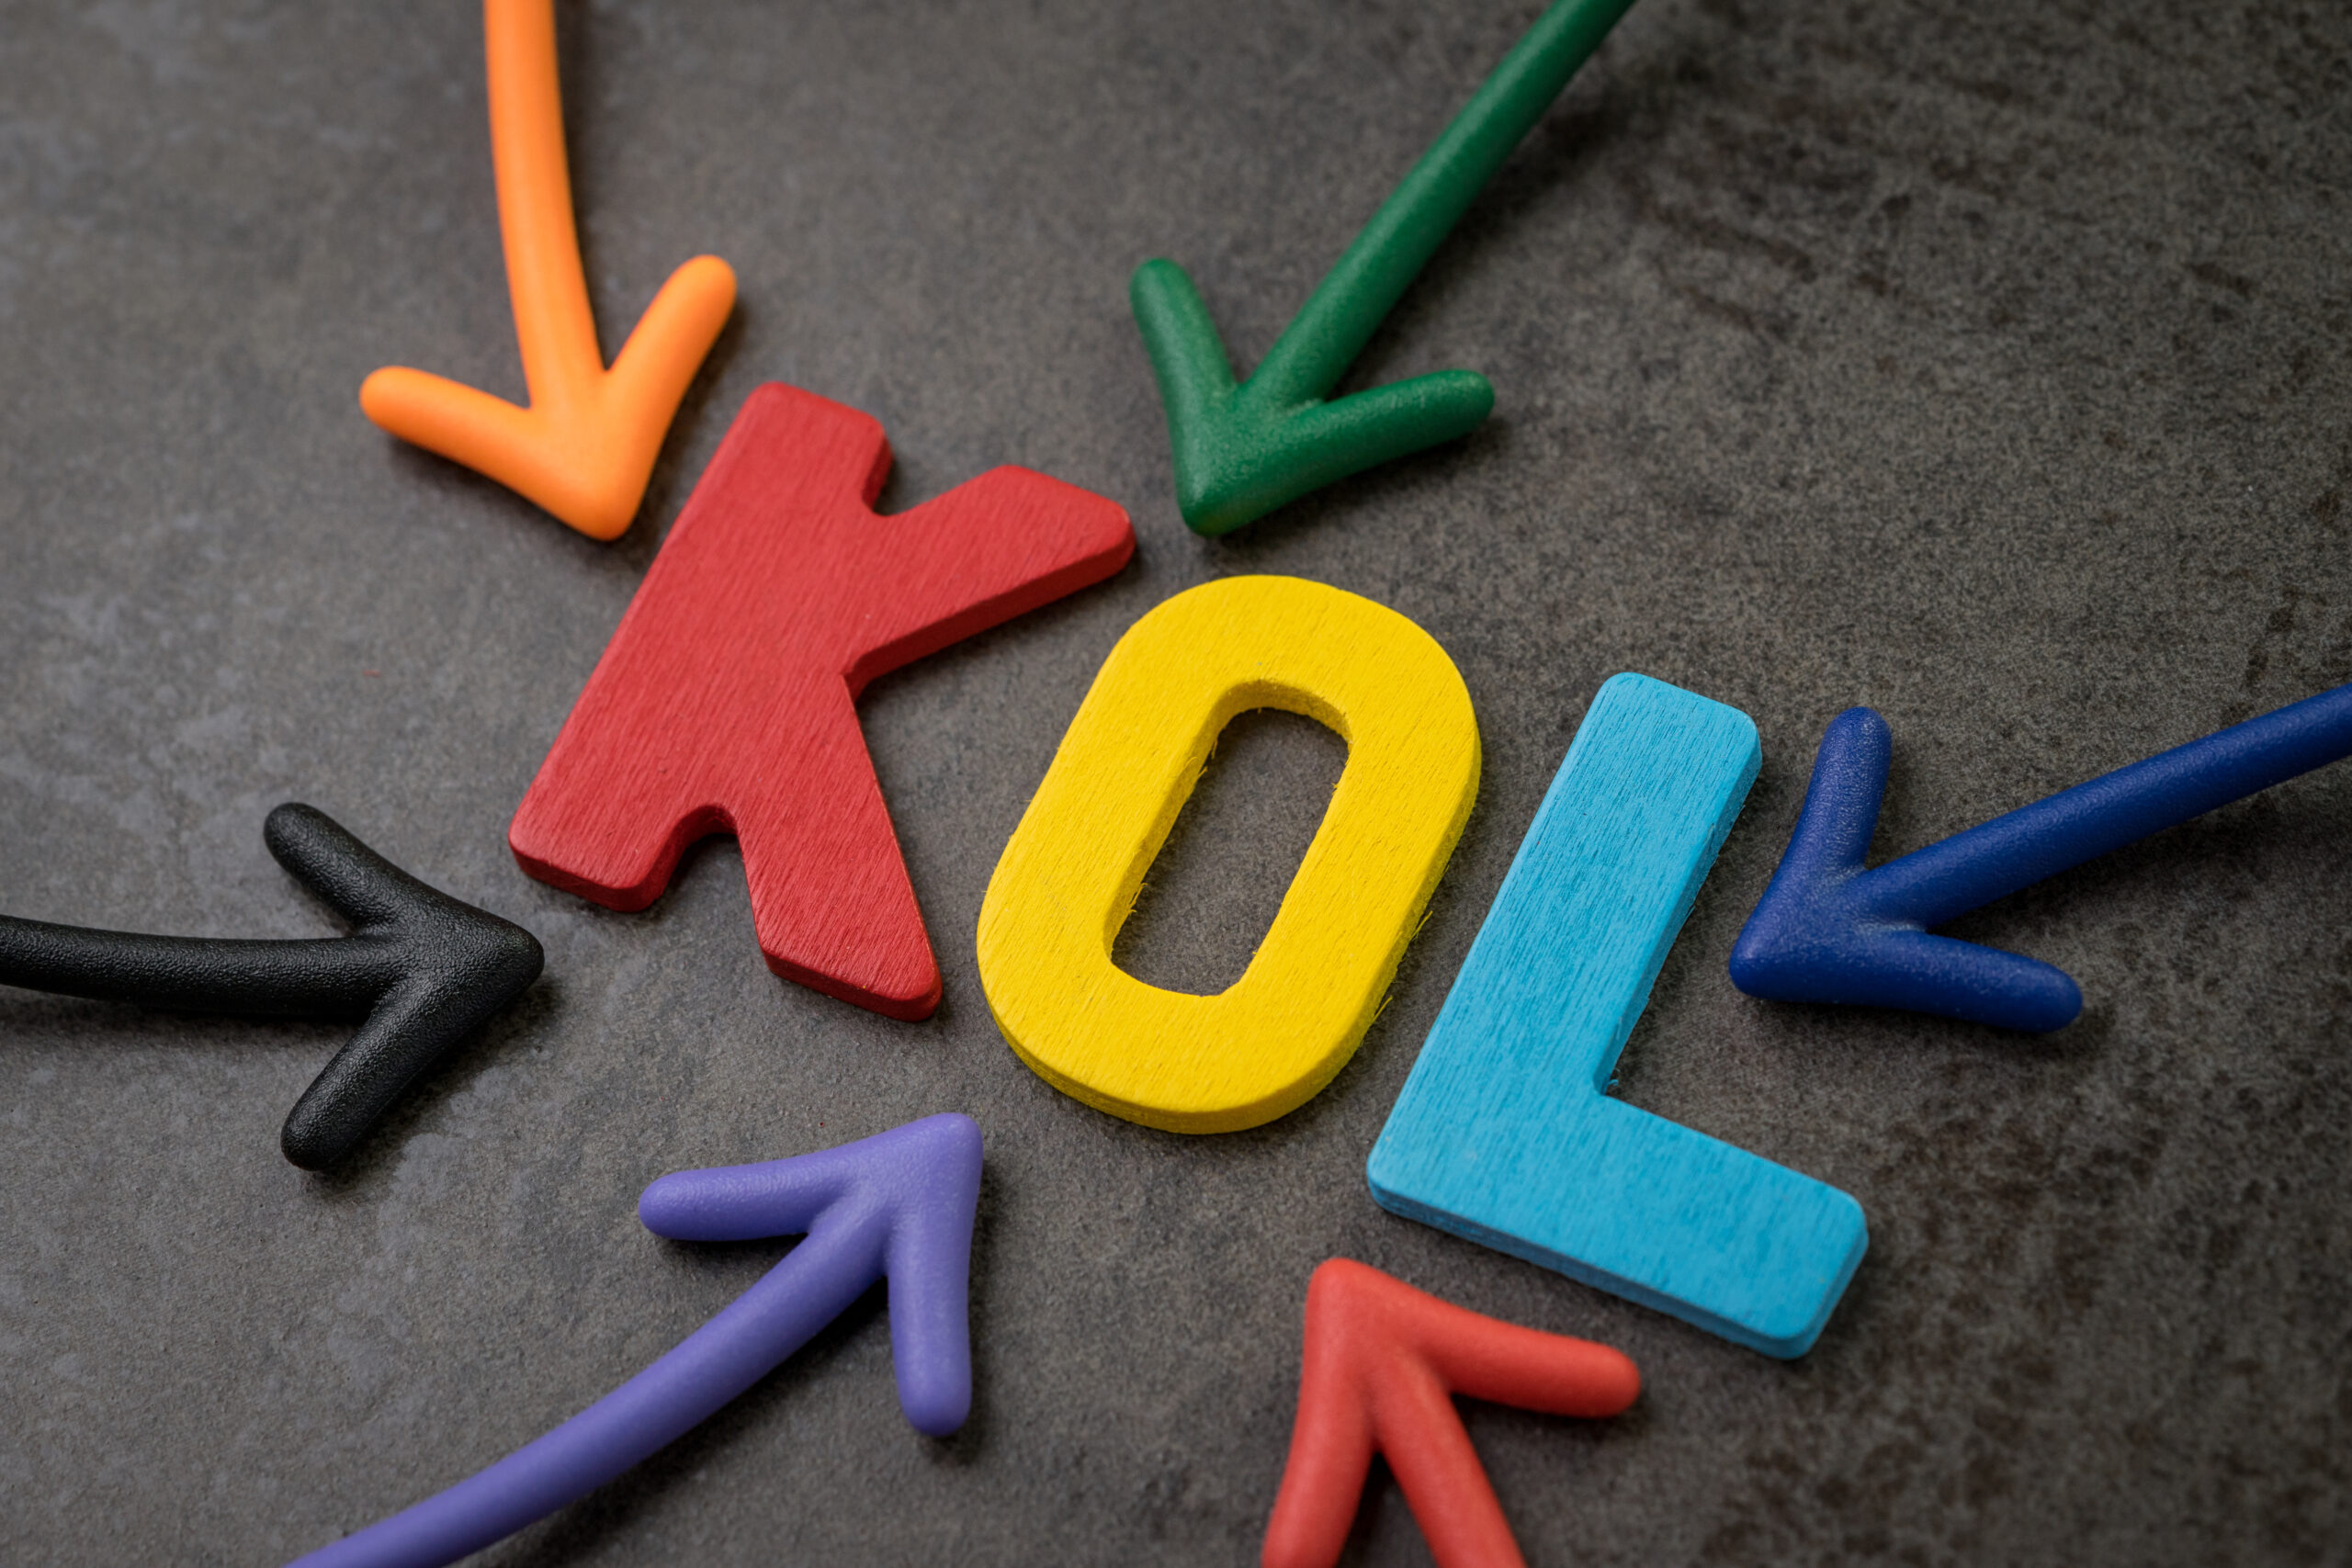 ライブコマースにおけるKOLとは？KOCやインフルエンサーとの違いについて解説